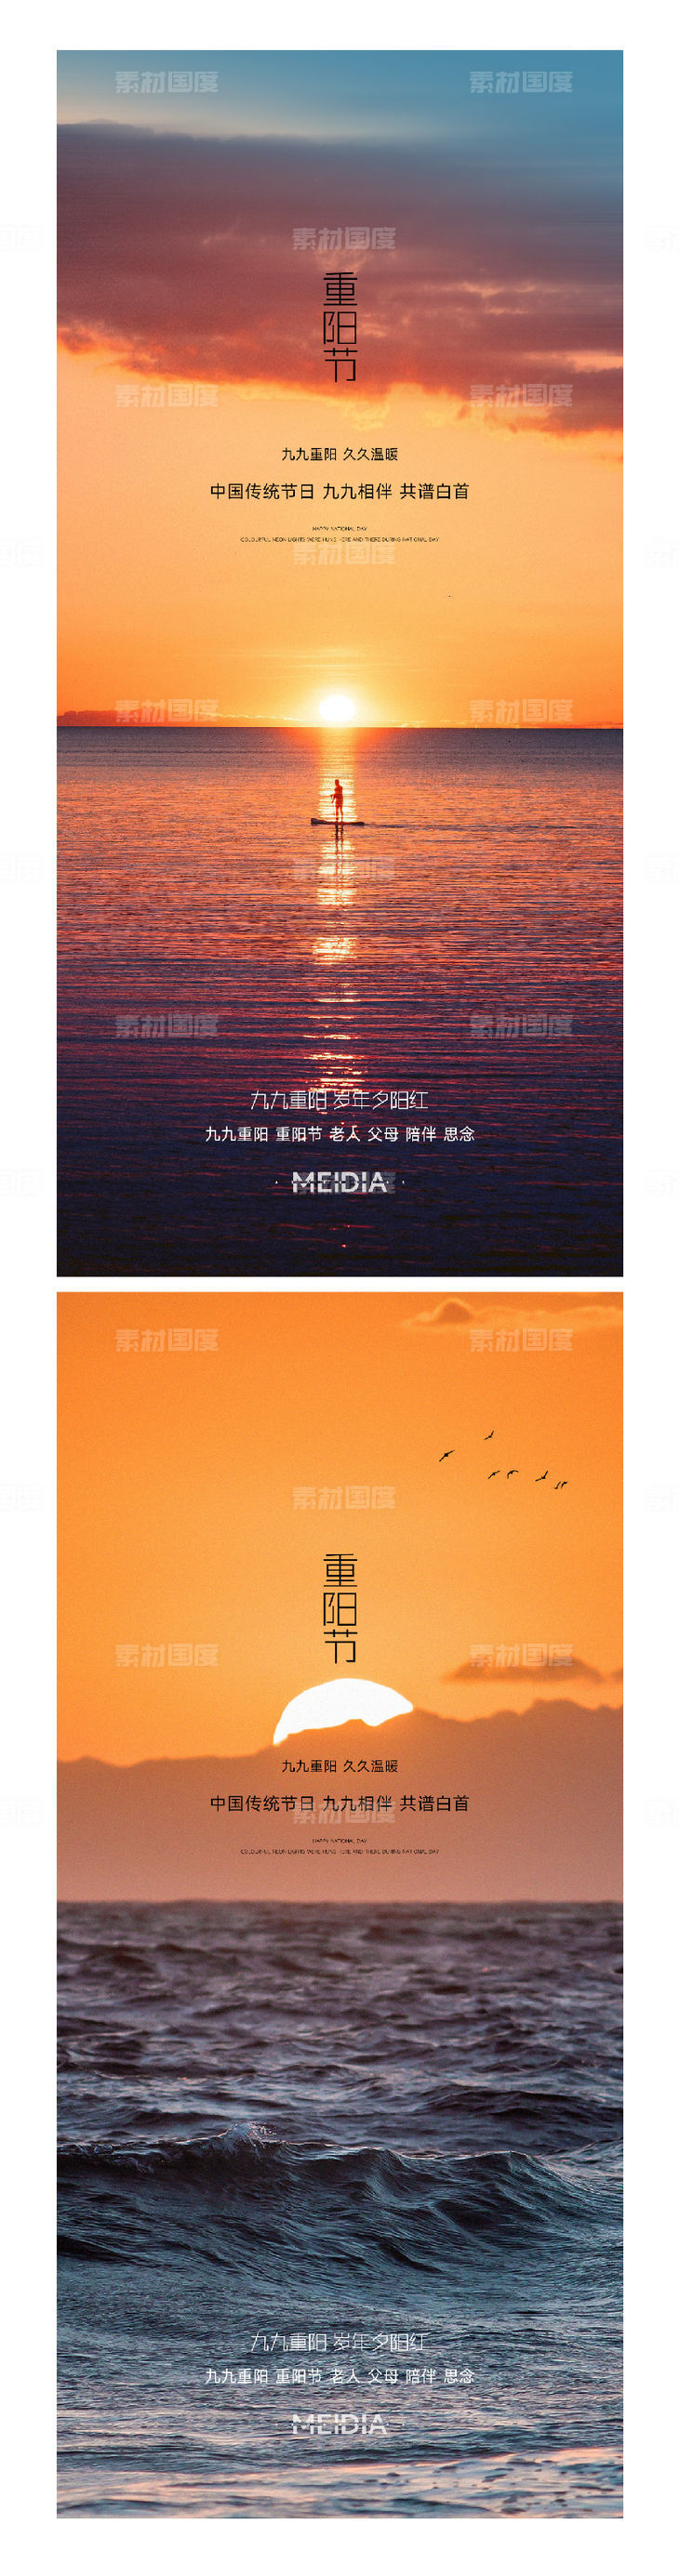 中国风古风概念大气重阳节节日系列海报